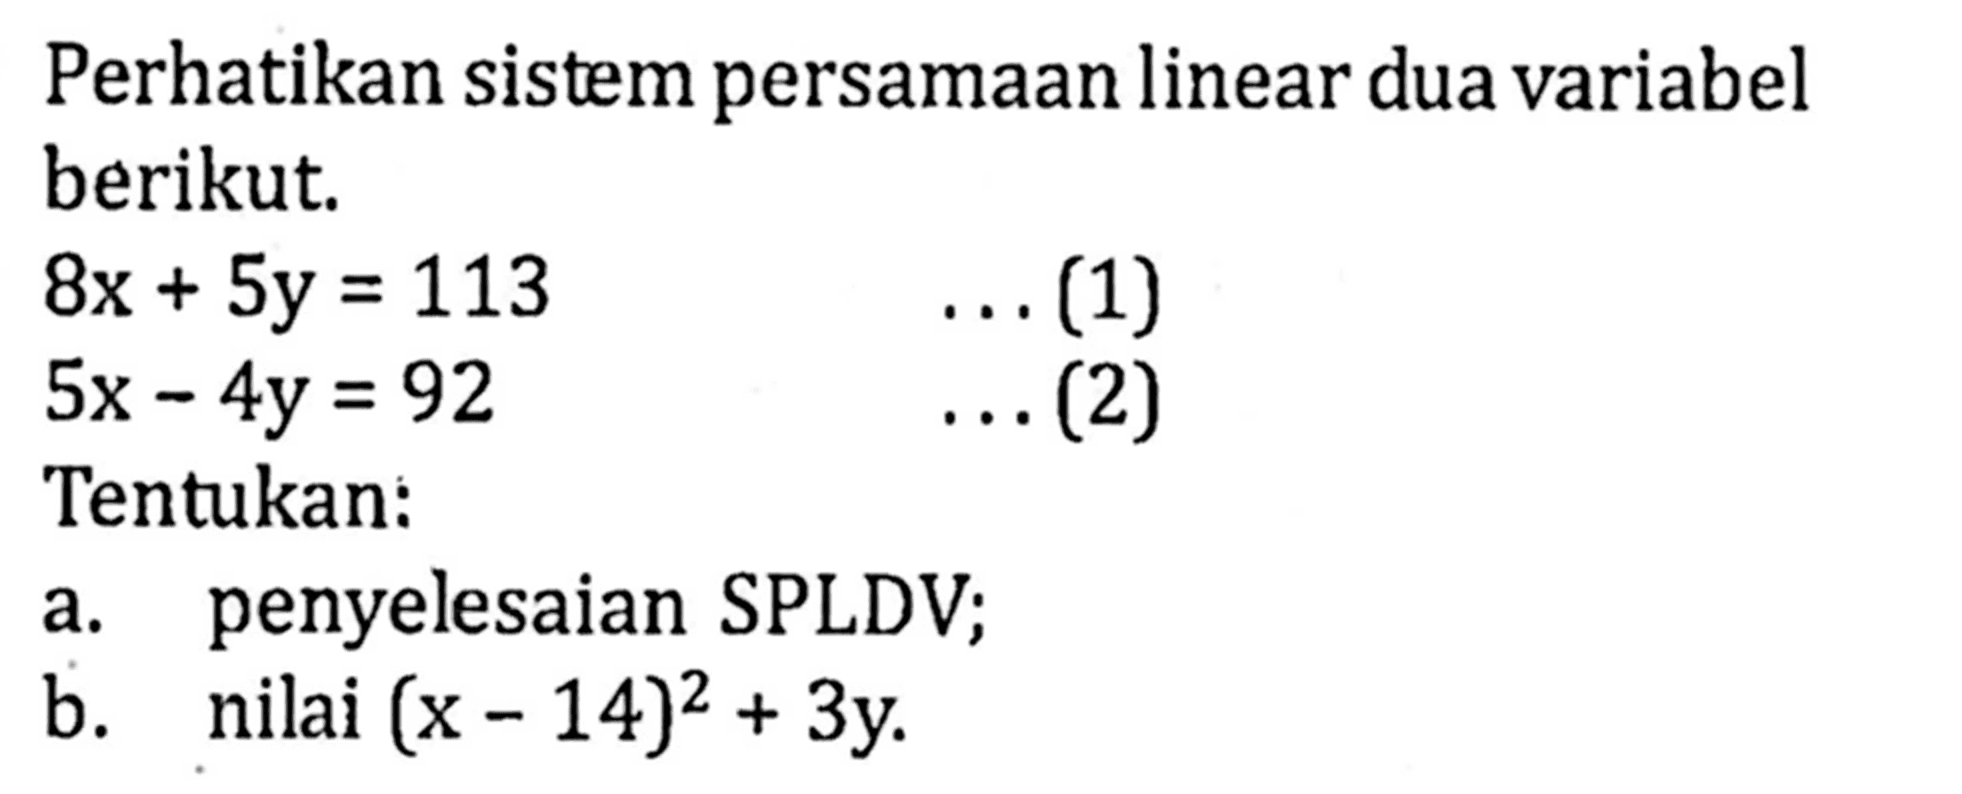 Perhatikan sistem persamaan linear dua variabel berikut. 8x+5y=13 ...(1) 5x-4y=92 ...(2) Tentukan: a. penyelesaian SPLDV; b. nilai (x-14)^2 +3y.